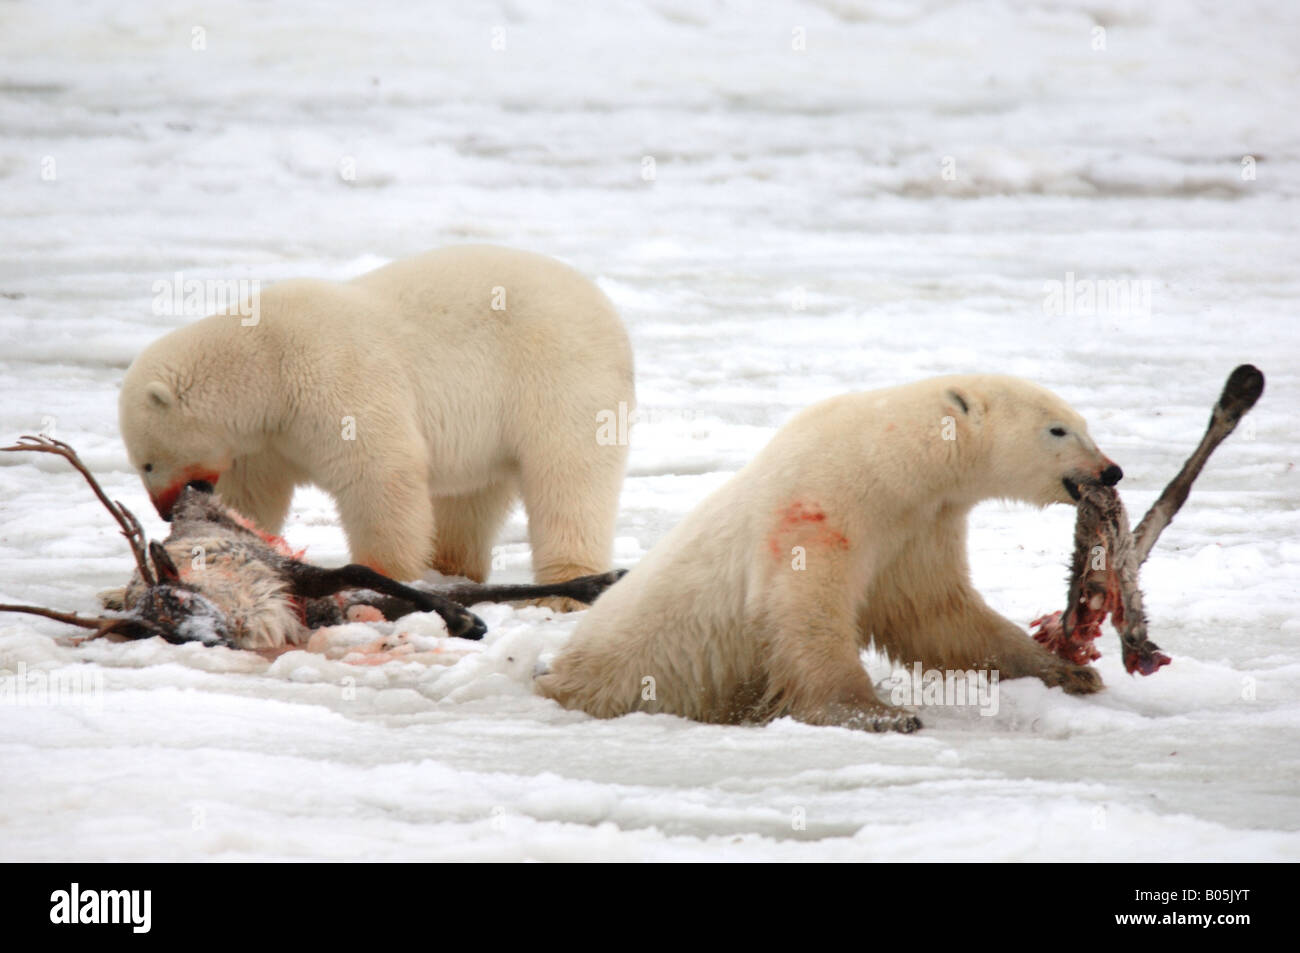 Manitoba Hudson bay unique photos of male polar bear feeding on a caribou carcass Stock Photo